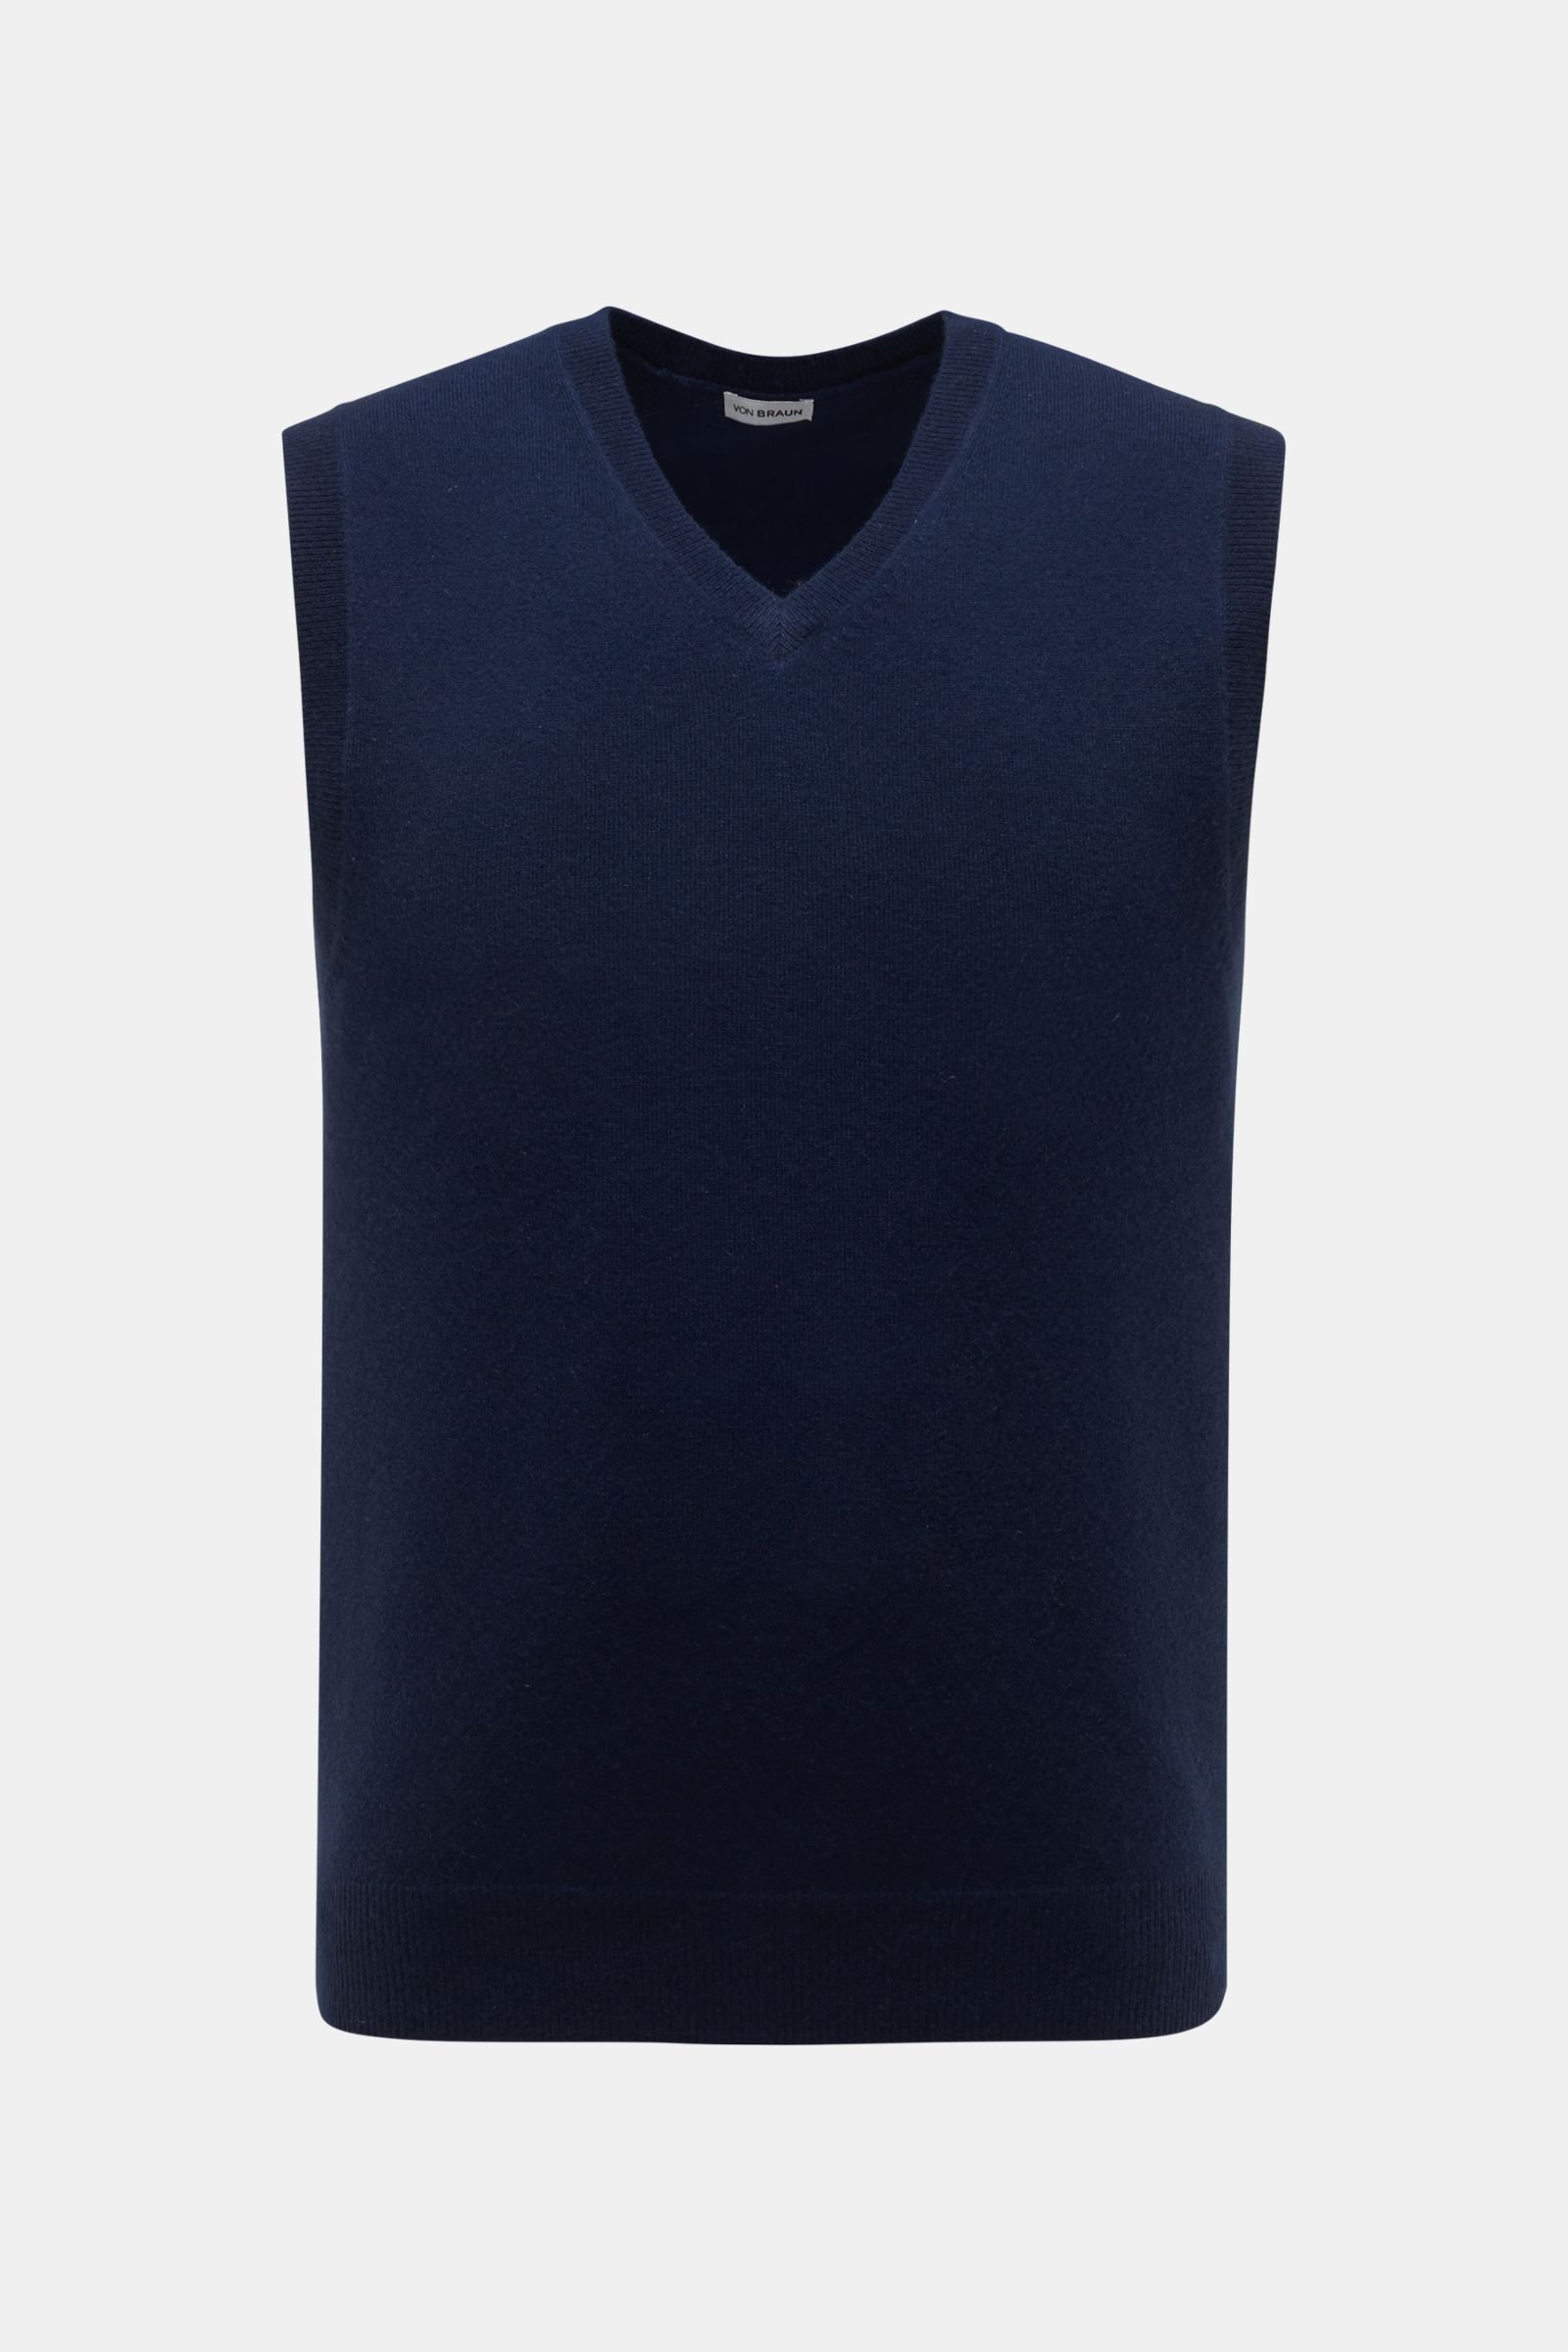 Cashmere V-neck sweater vest dark blue